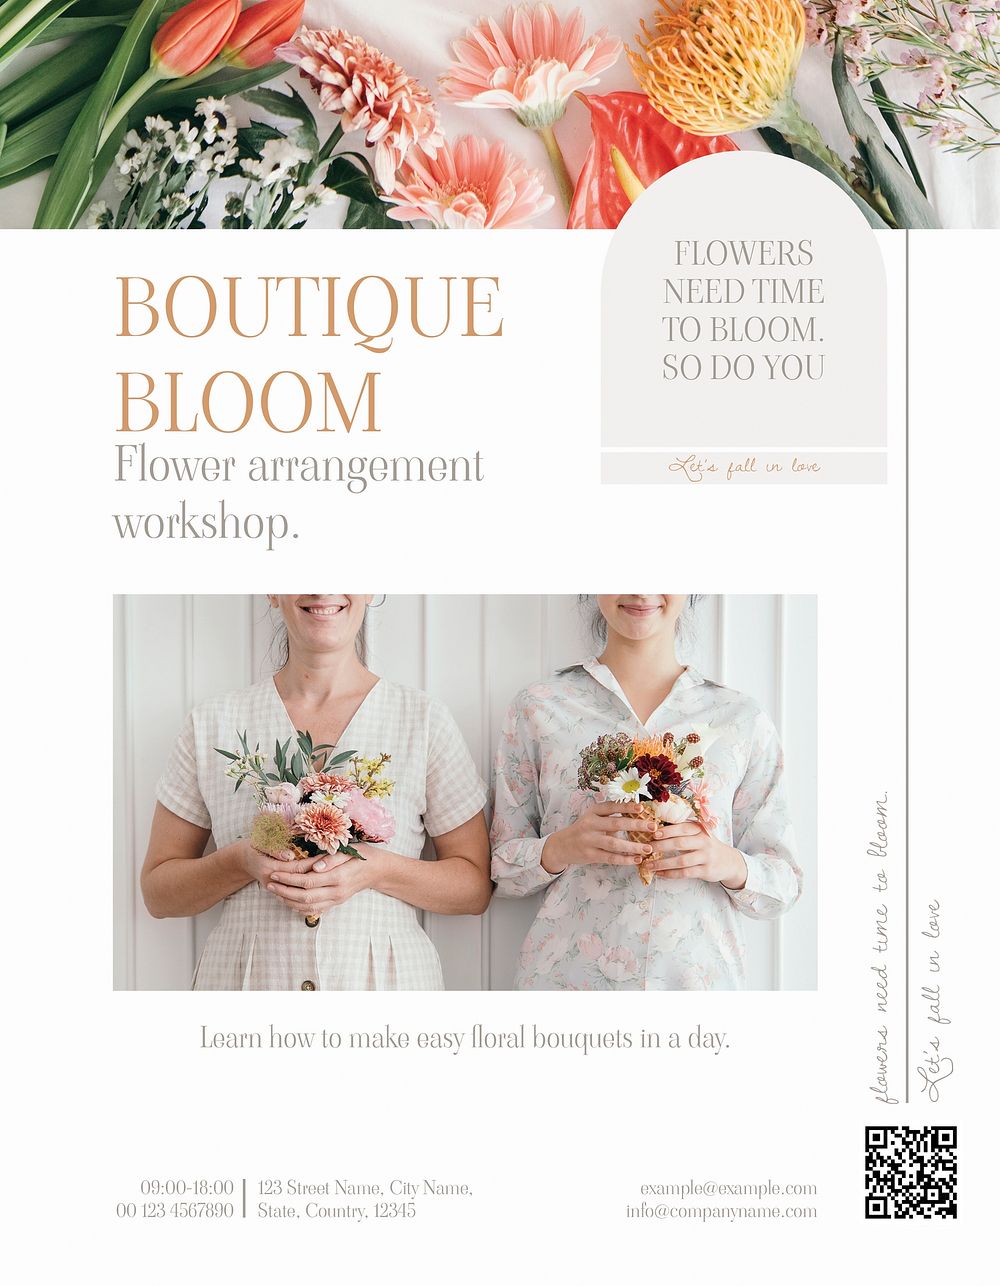 Flower arrangement event flyer template, aesthetic design psd